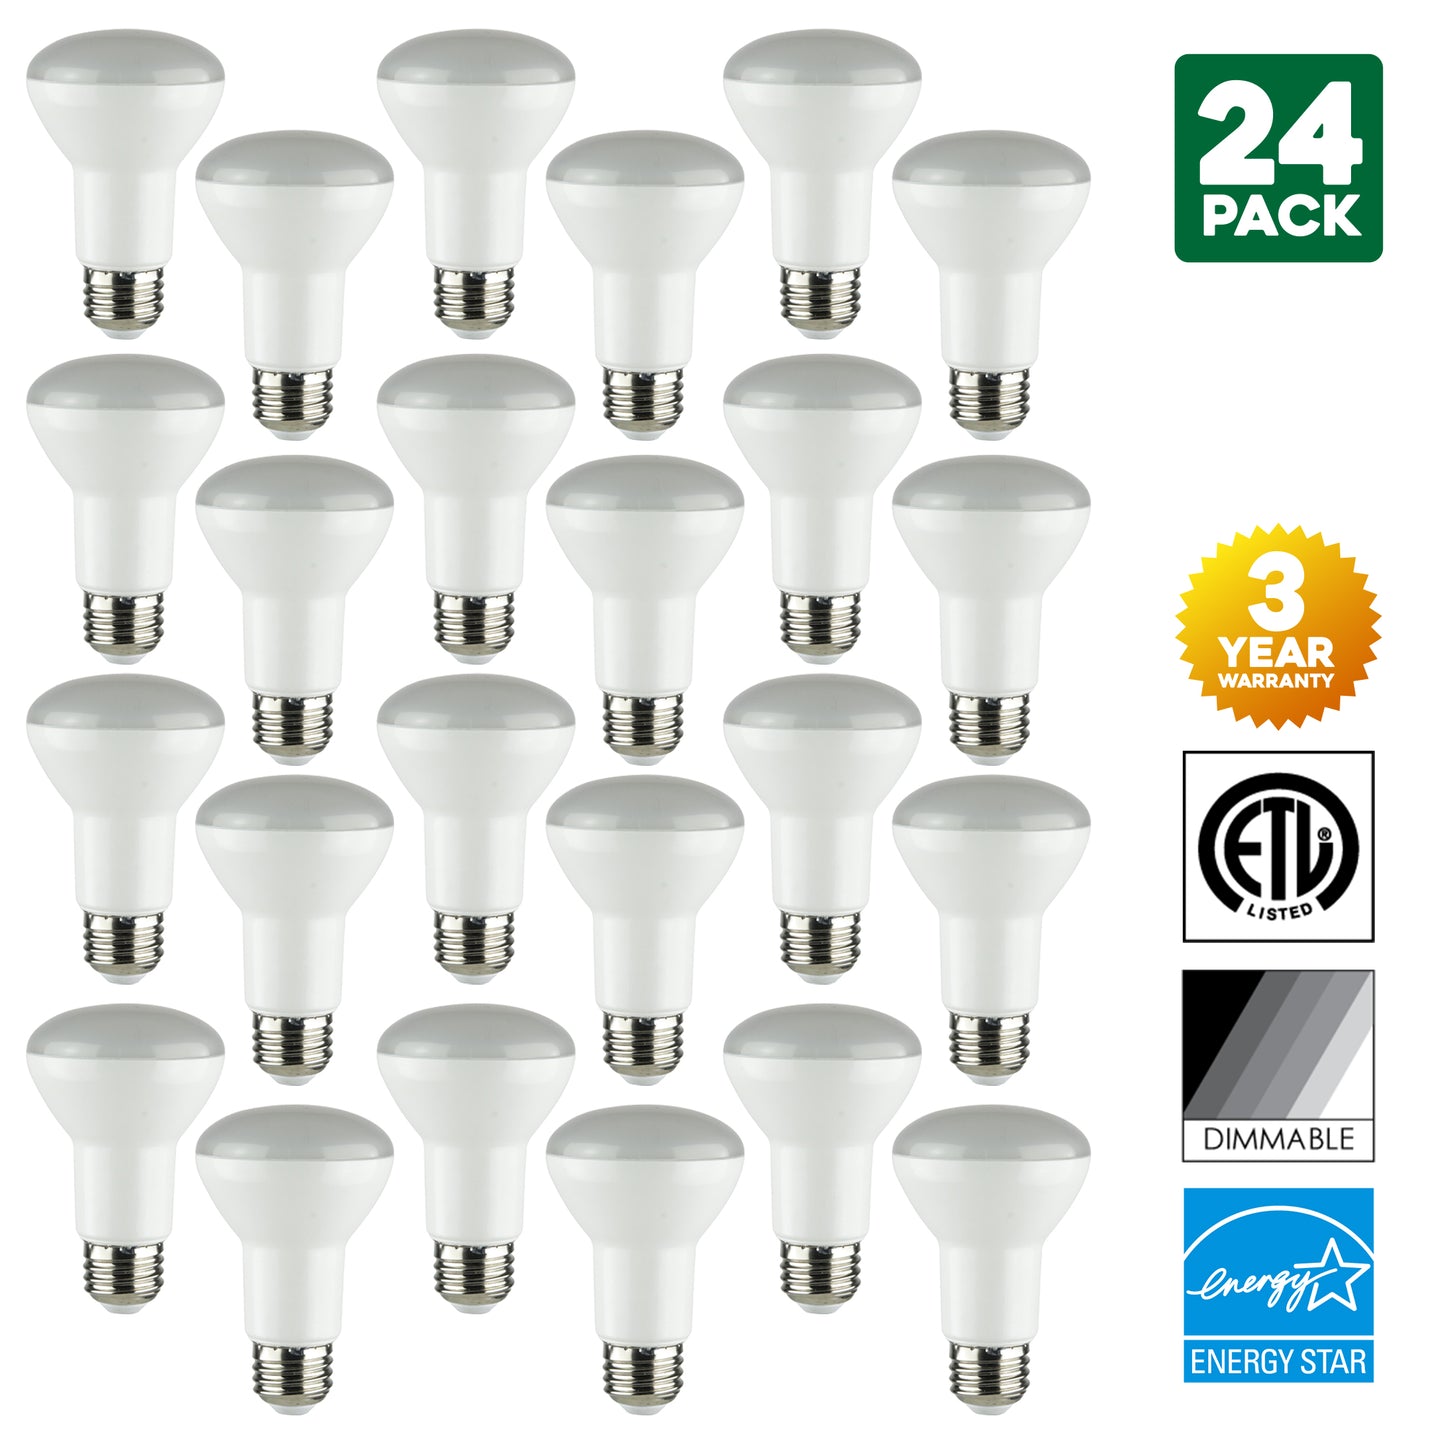 Sunlite 81130-SU LED BR20 BR20 Light Bulb, 8 Watt (50W Equivalent), 560 Lumens, Medium Base (E26), Dimmable, Energy Star, 27K - Warm White 1 Pack